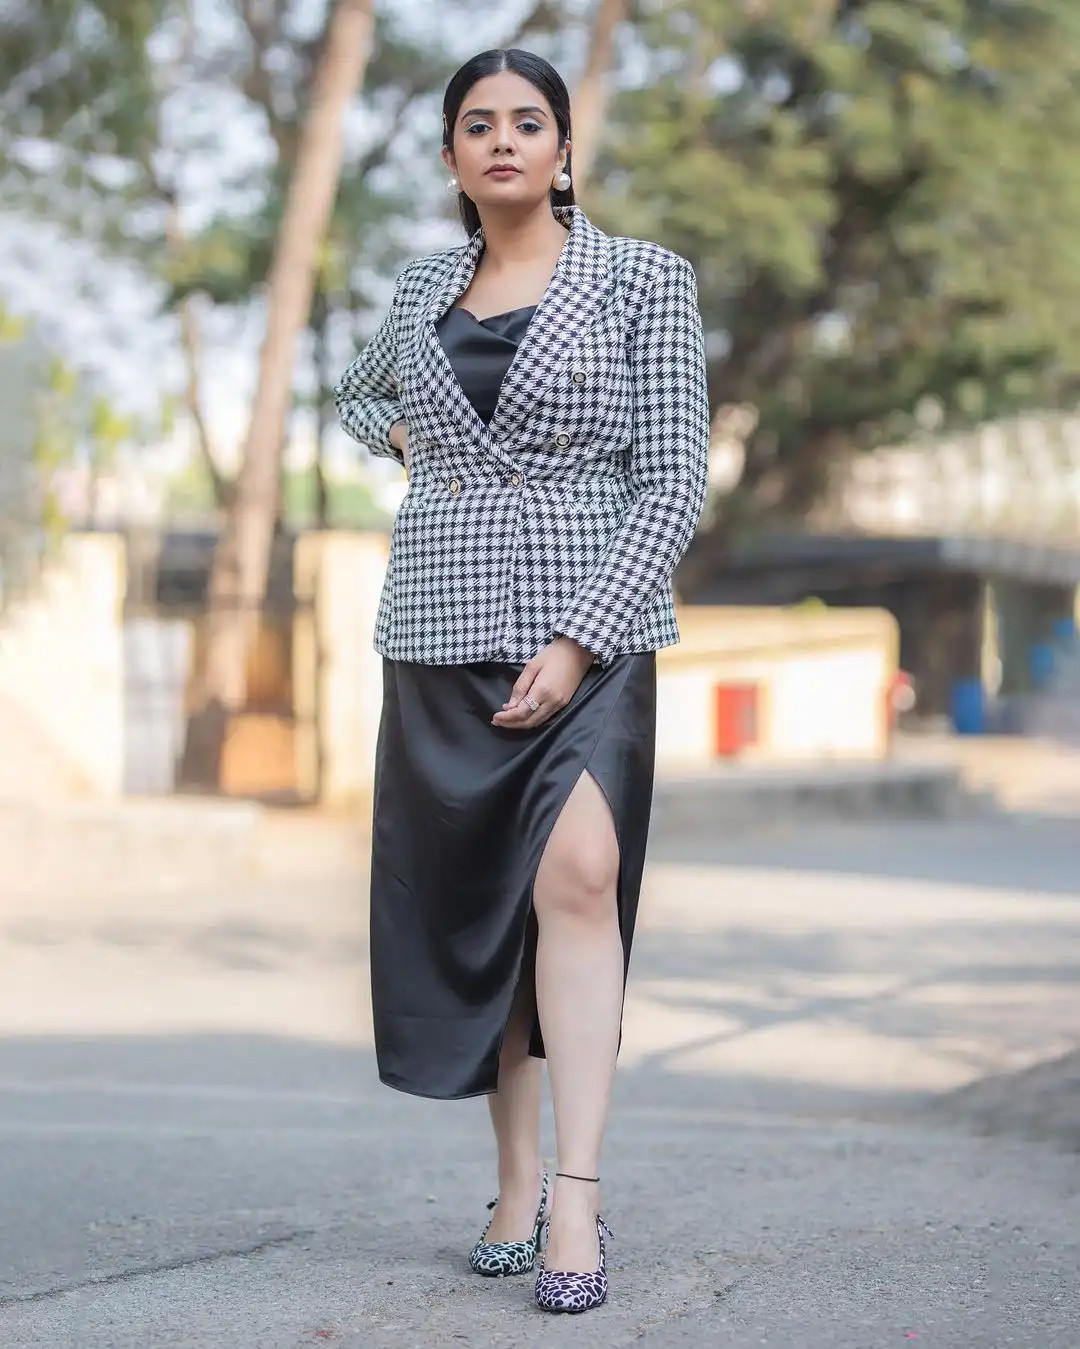 Sreemukhi trendy looks in long skirt